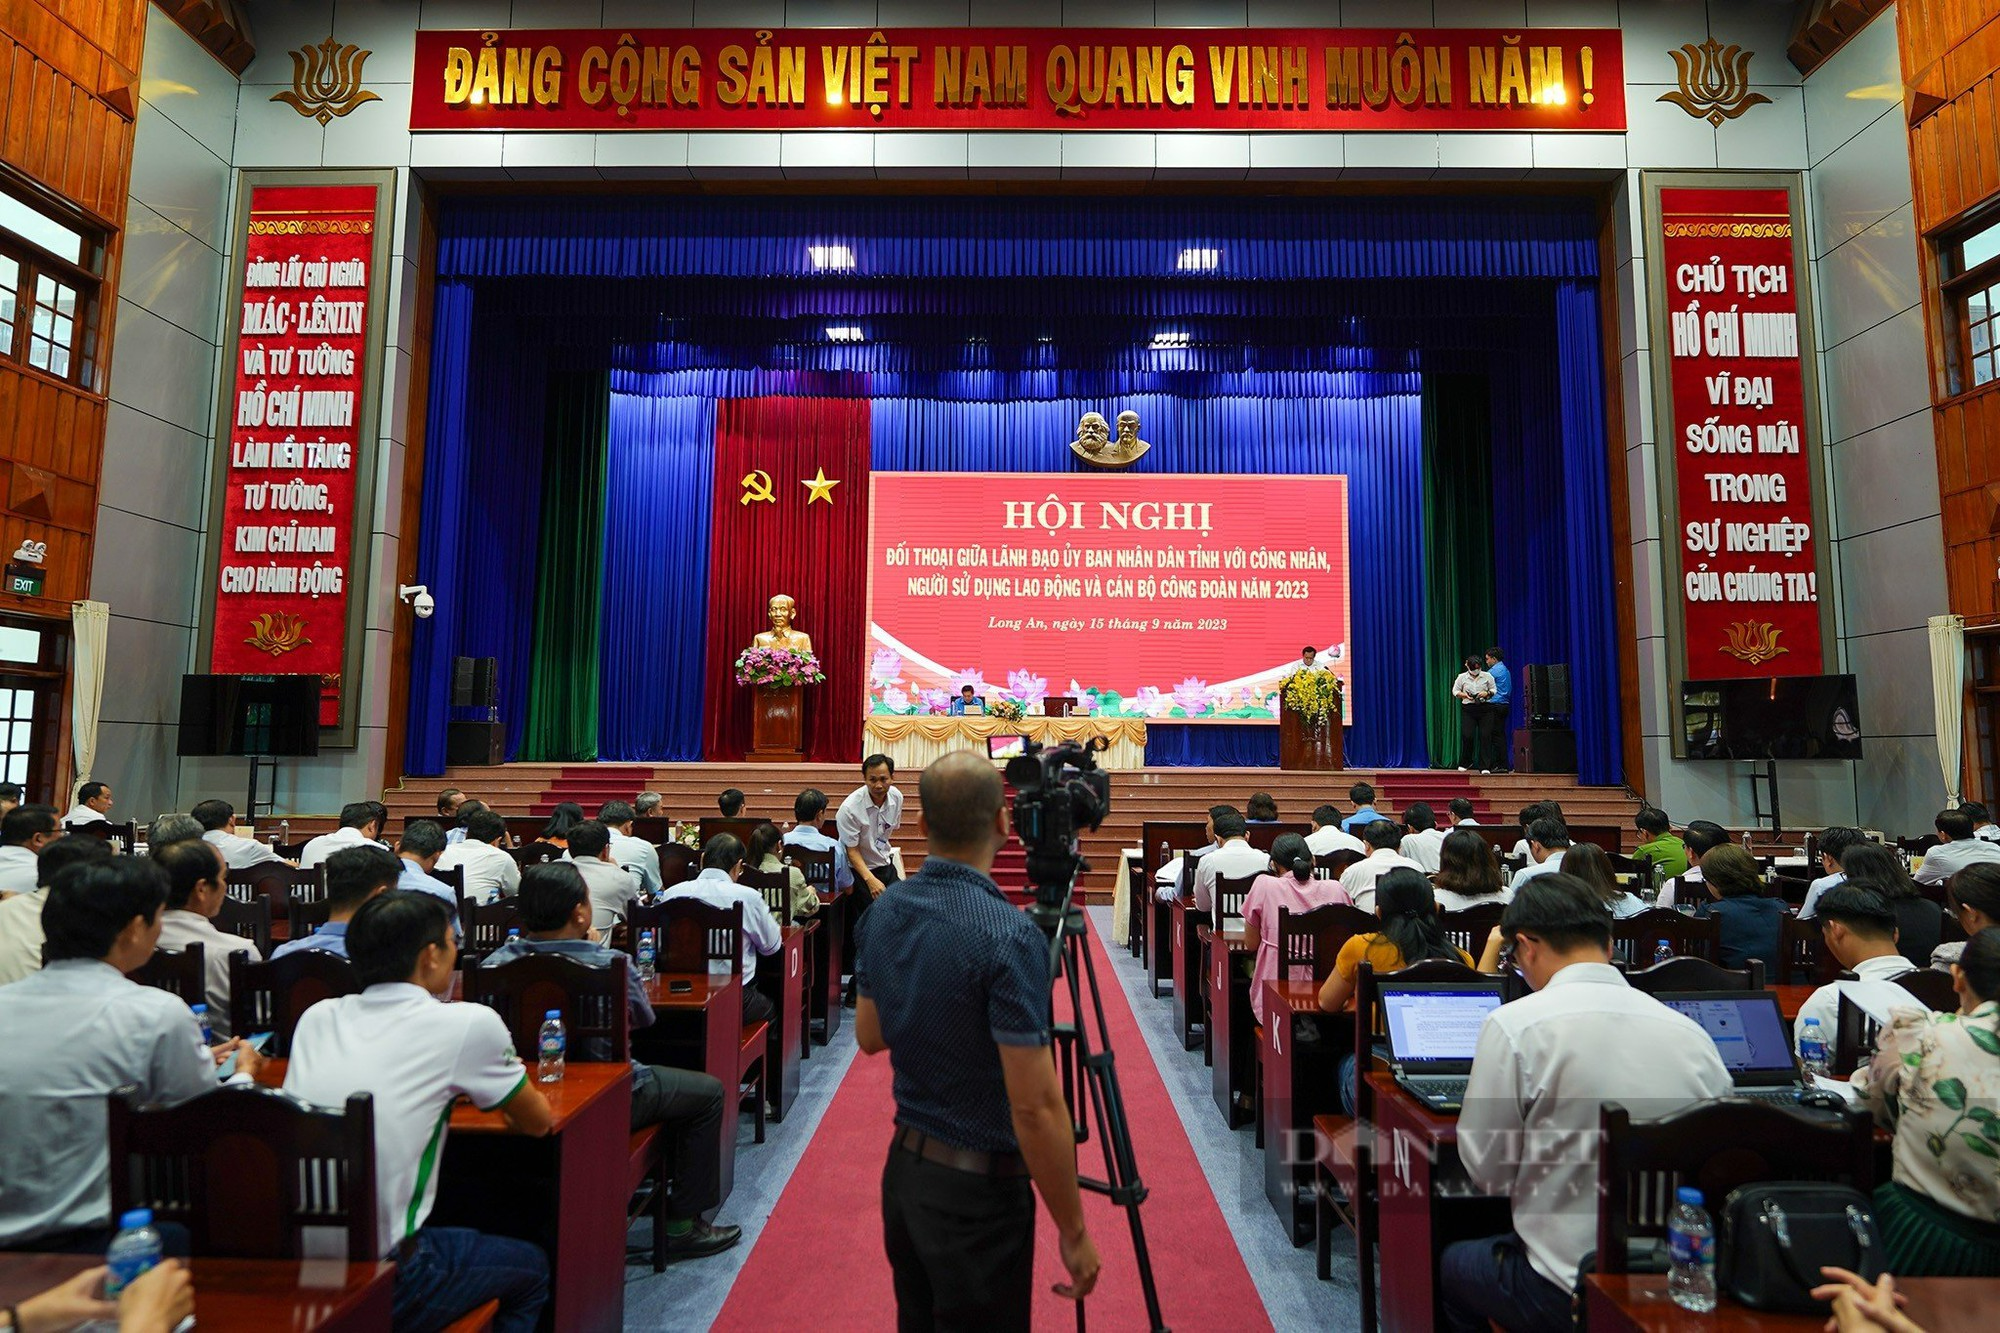 Hơn 300 công nhân đối thoại cùng Phó chủ tịch UBND tỉnh Long An - Ảnh 1.